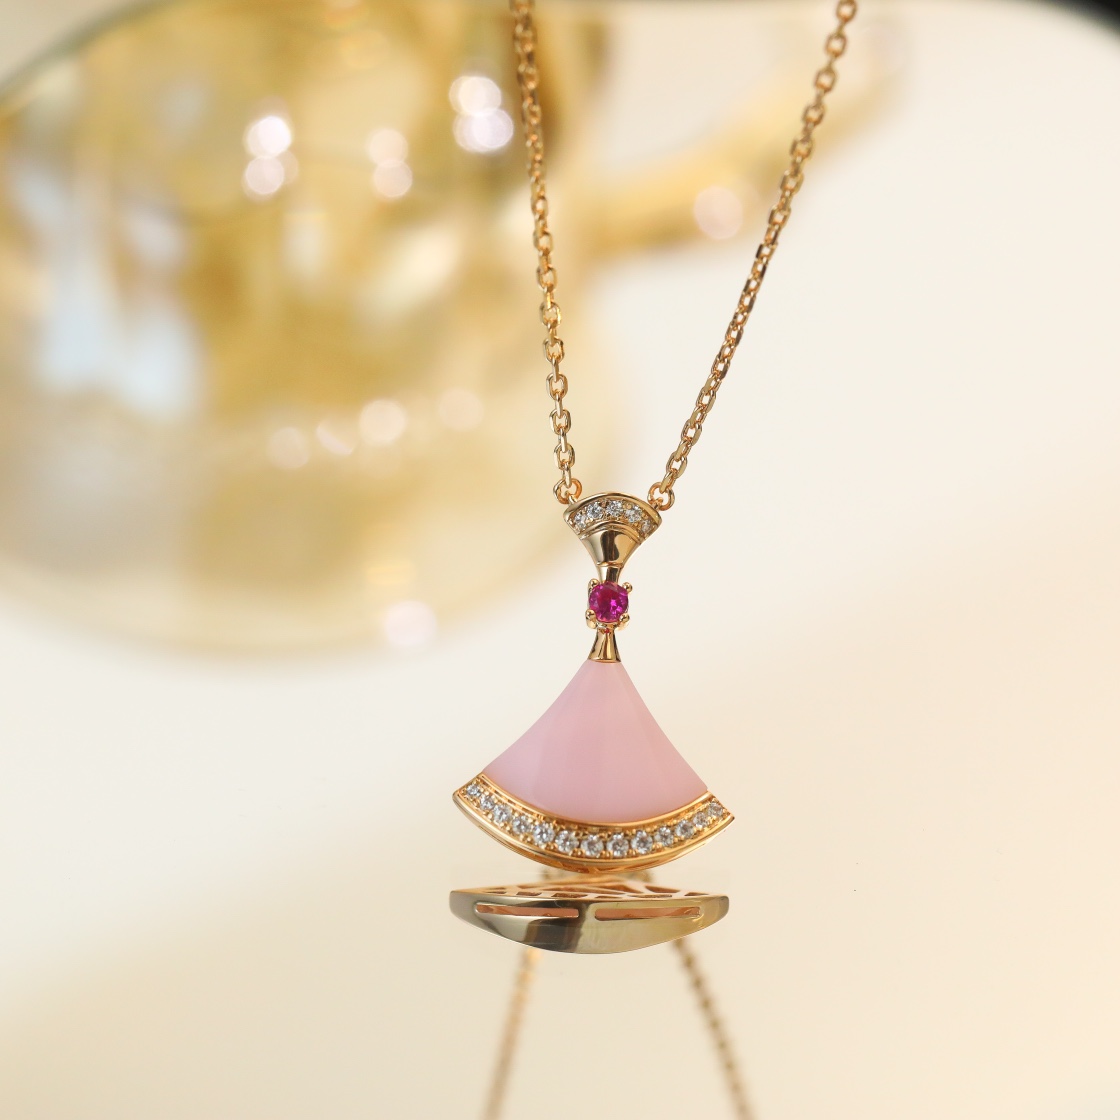 Bvlgari Jewelry Necklaces & Pendants Pink White